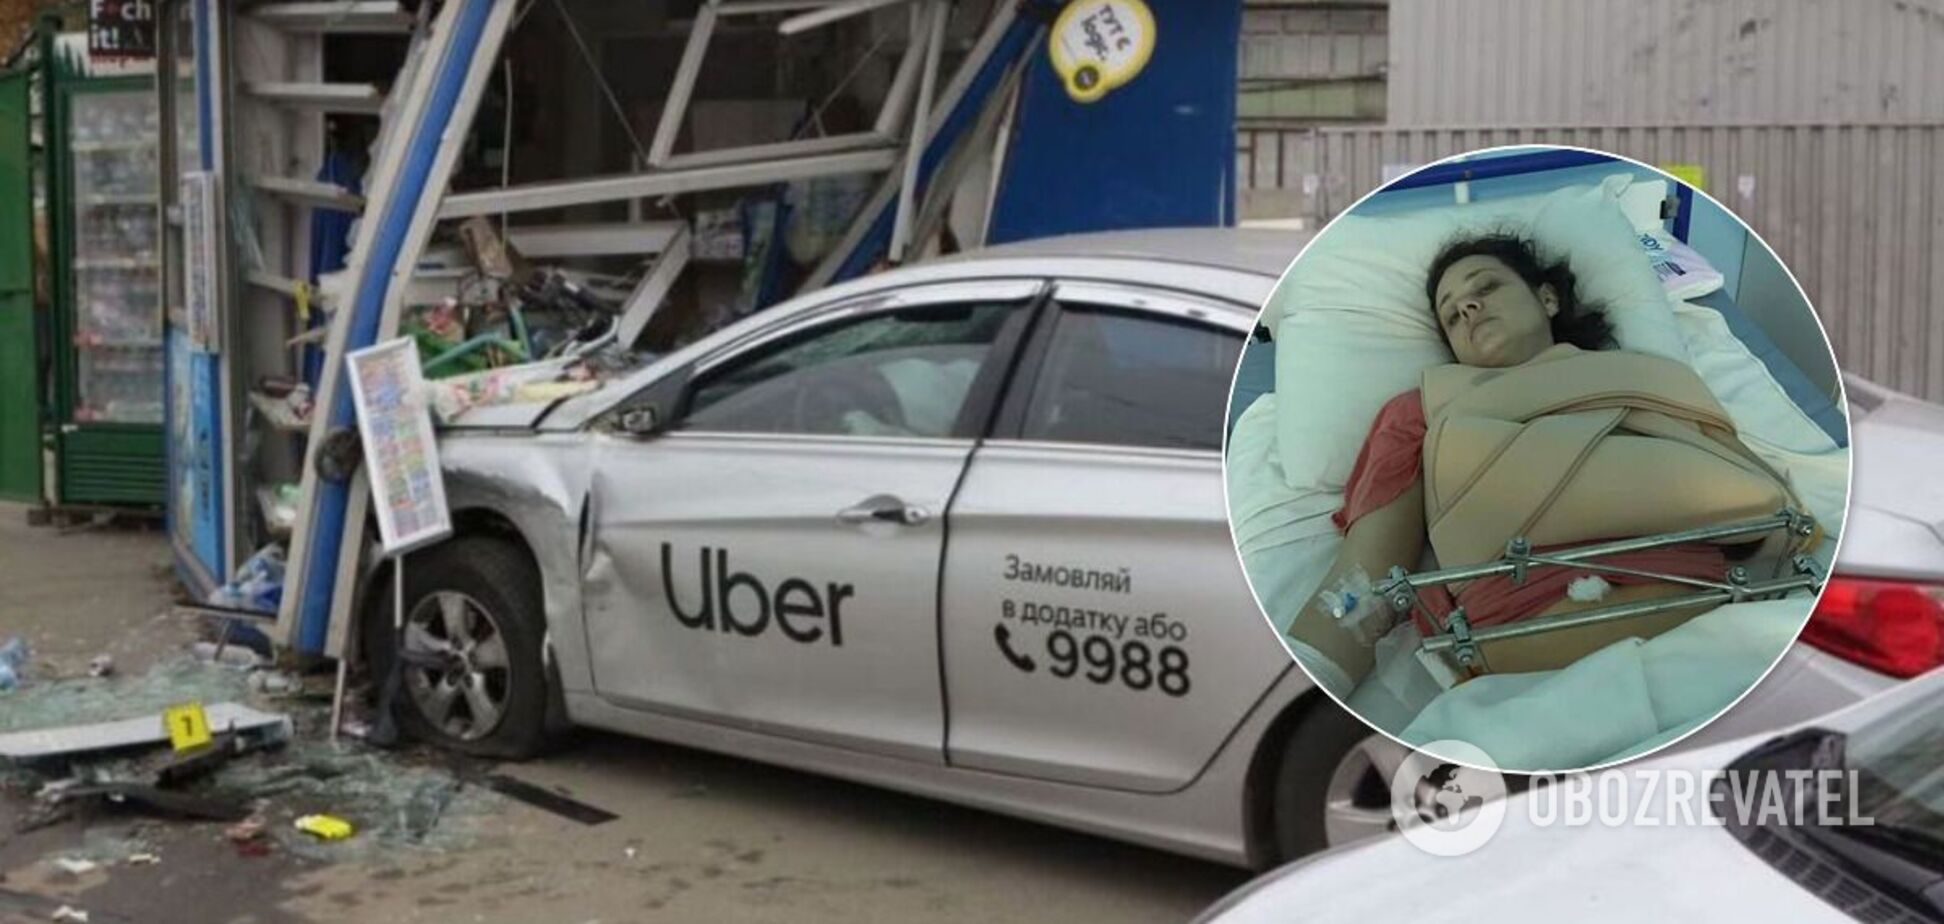 Близькі Юліїї Глущенко, яка вижила у ДТП з таксі Uber в Києві, звернулися по допомогу